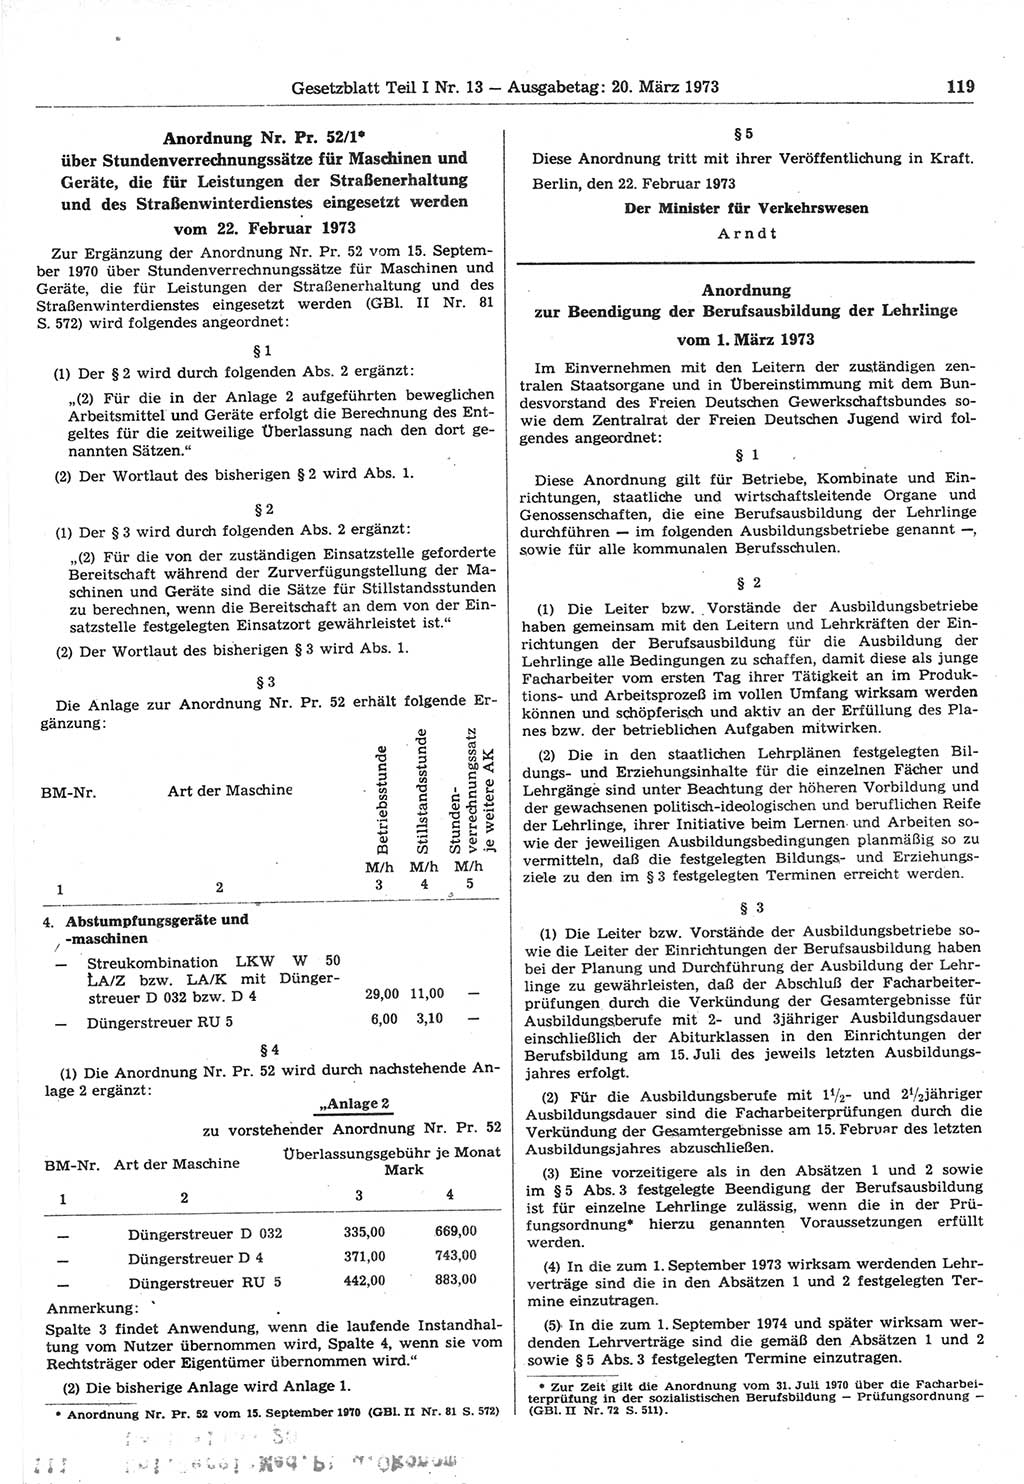 Gesetzblatt (GBl.) der Deutschen Demokratischen Republik (DDR) Teil Ⅰ 1973, Seite 119 (GBl. DDR Ⅰ 1973, S. 119)